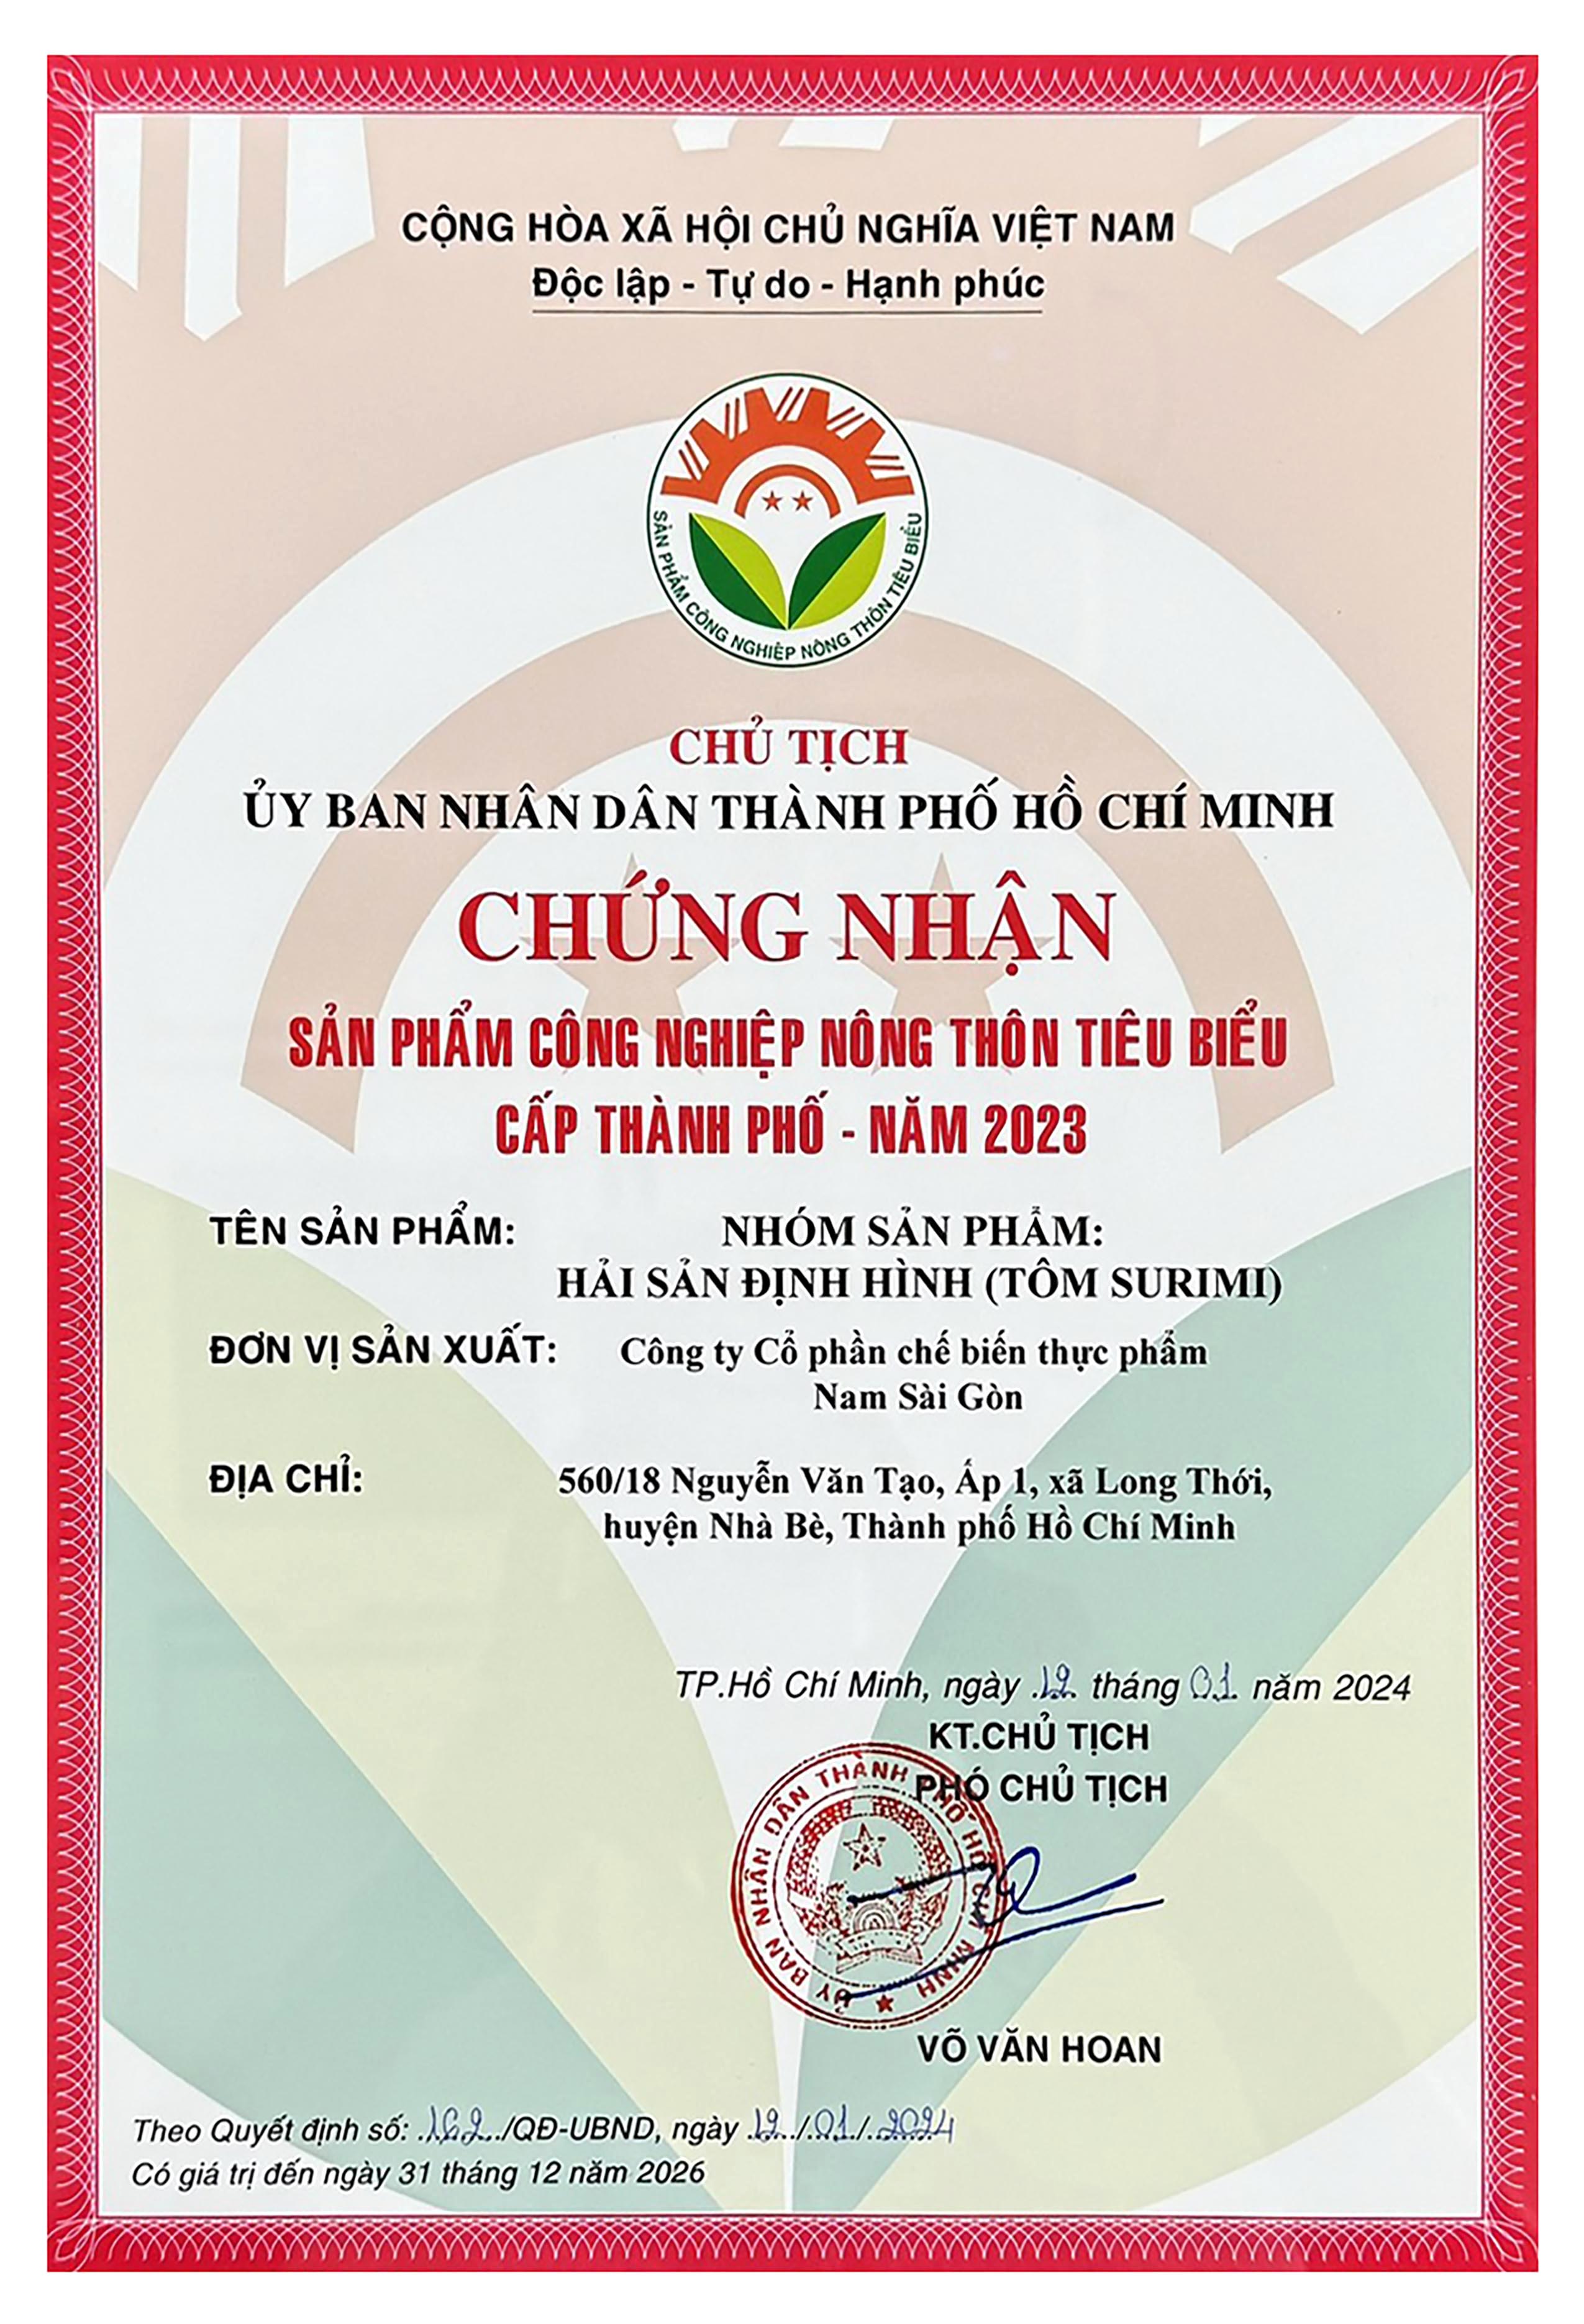 Nhóm sản phẩm định hình Nam Sài Gòn Food đạt chứng nhận SP CNNT tiêu biểu cấp Thành phố